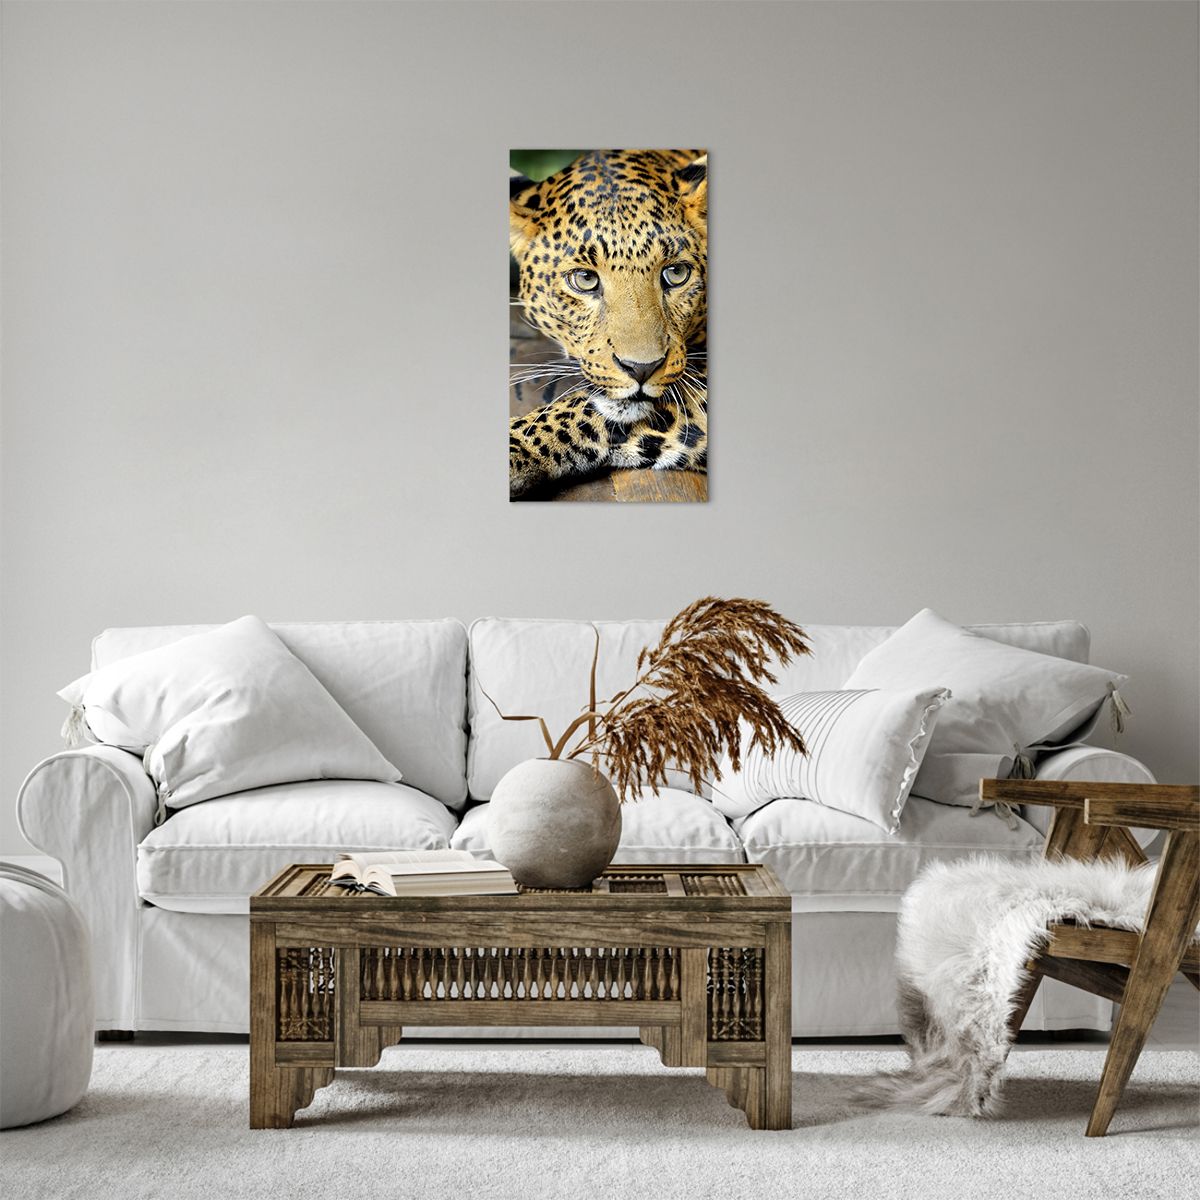 Bild auf Leinwand Tiere, Bild auf Leinwand Panther, Bild auf Leinwand Wilde Katze, Bild auf Leinwand Afrika, Bild auf Leinwand Raubtier